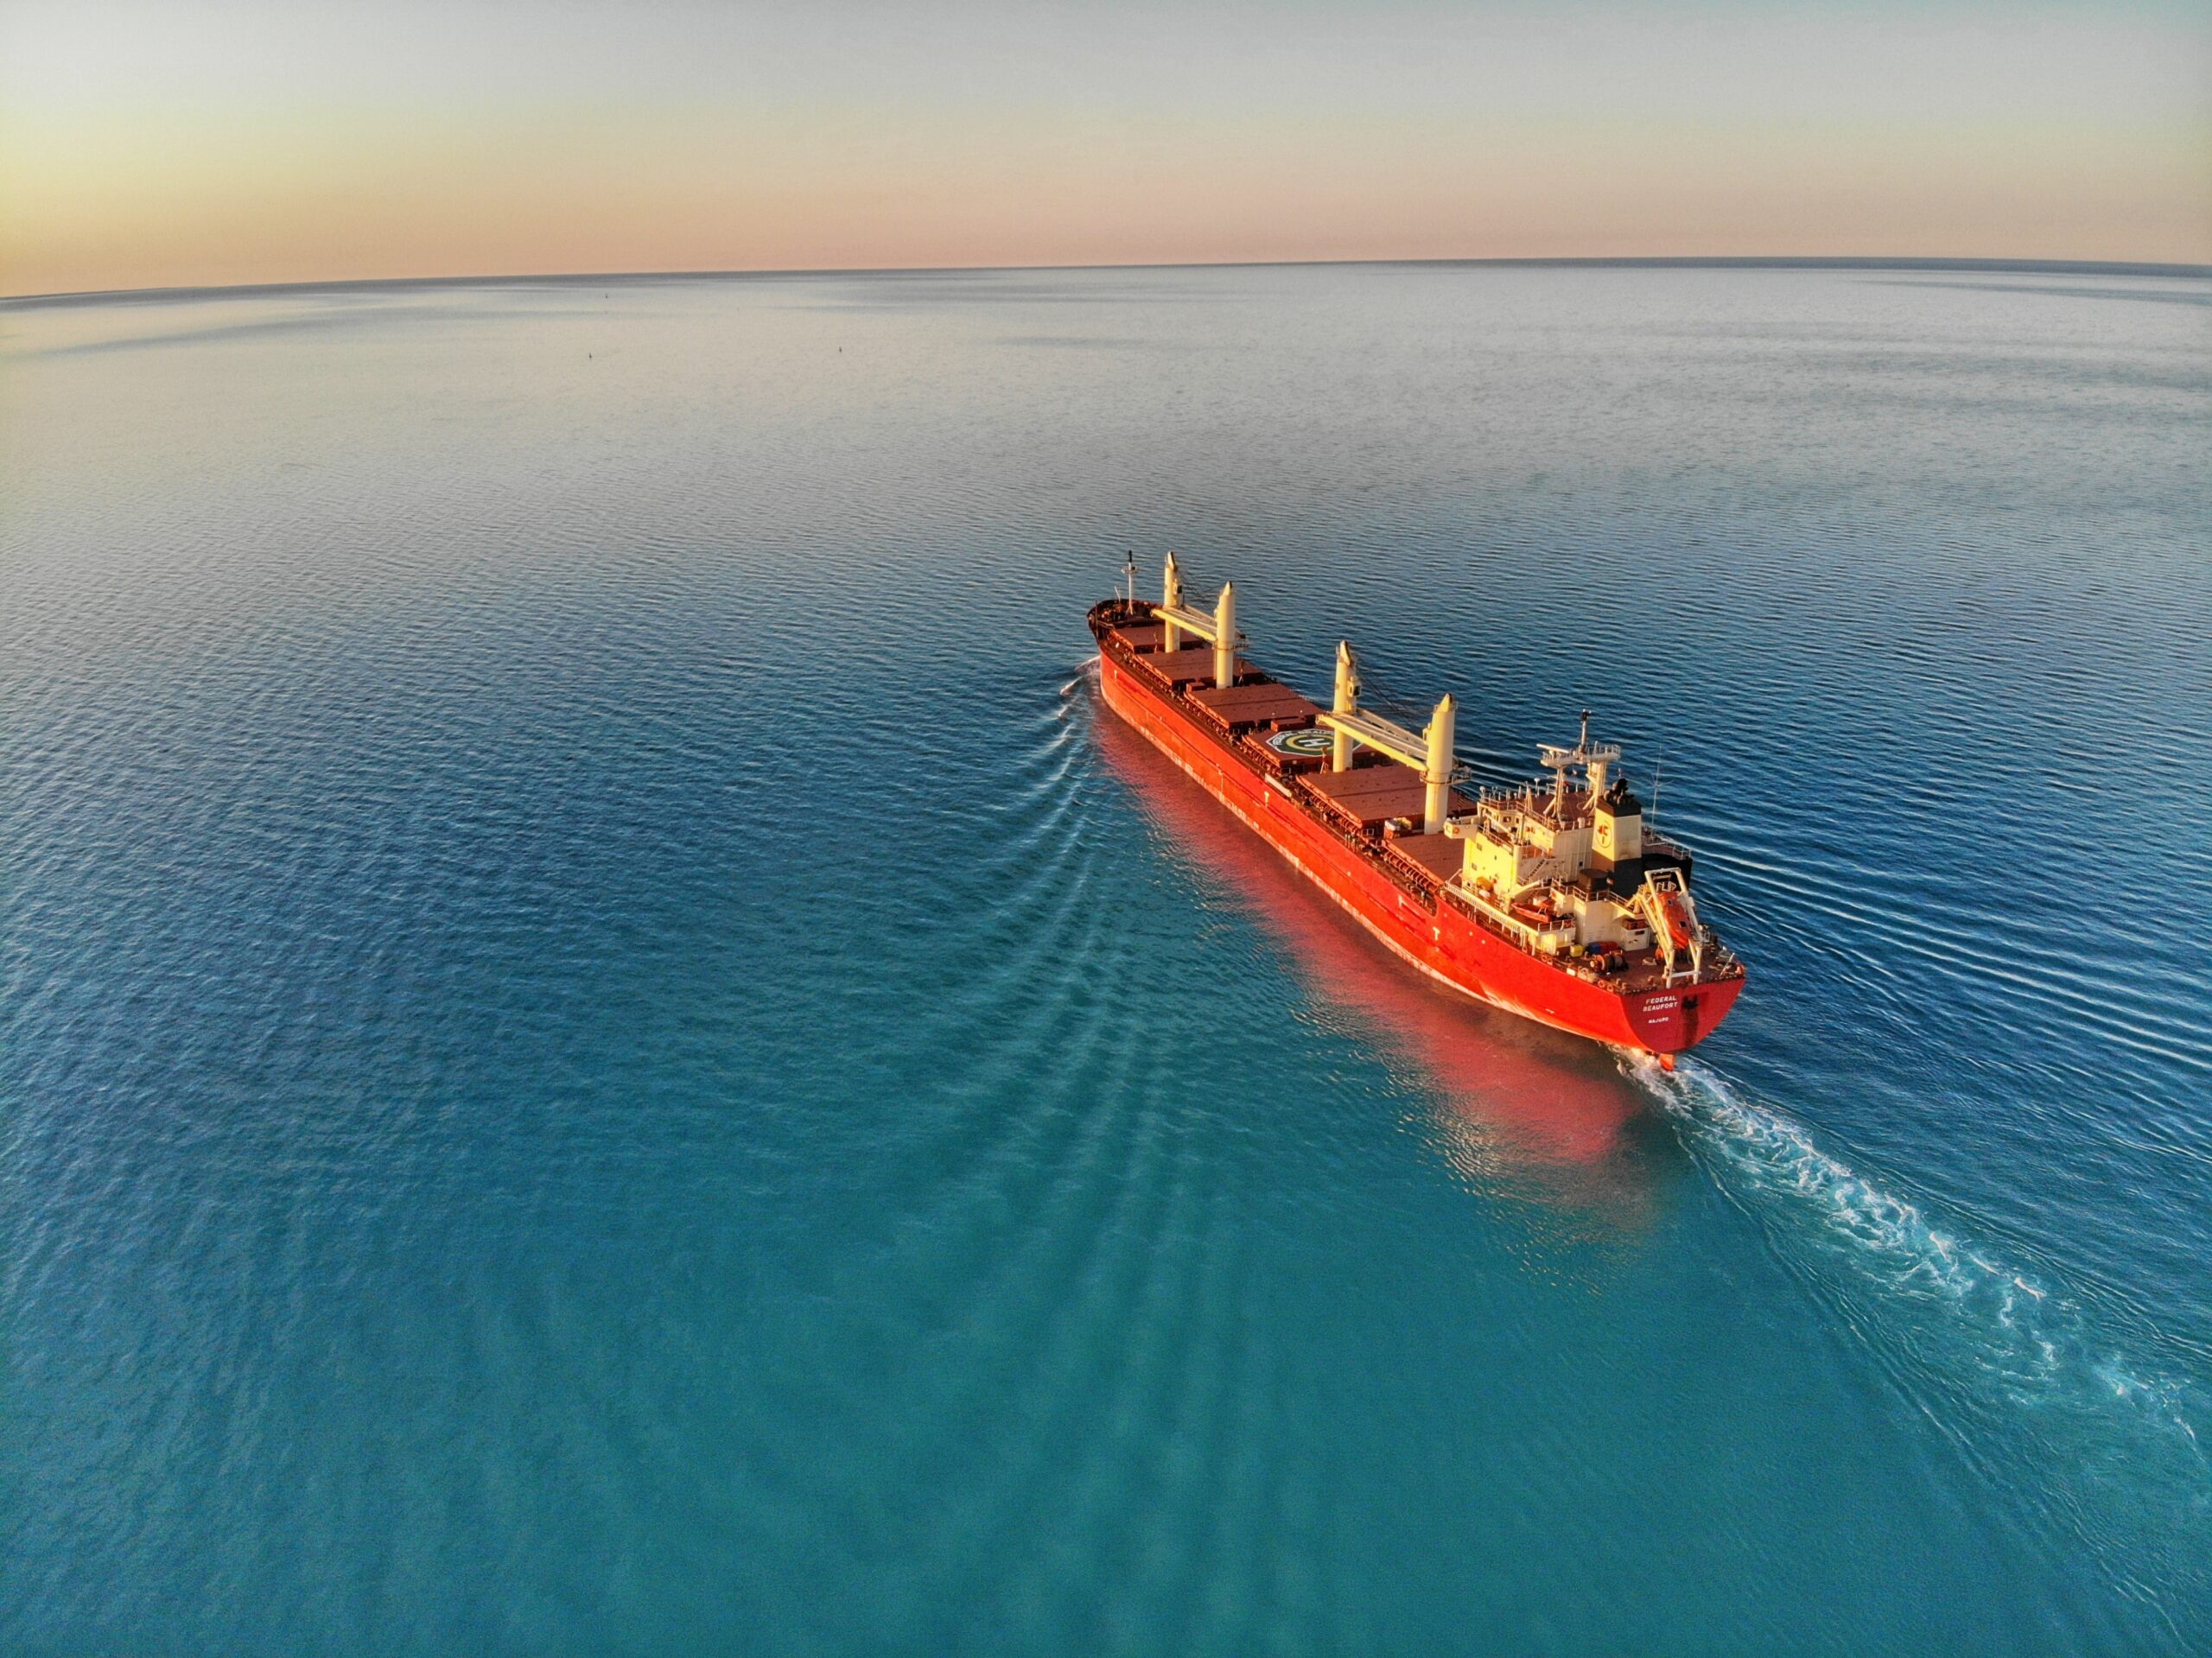 LNG ship on the open ocean